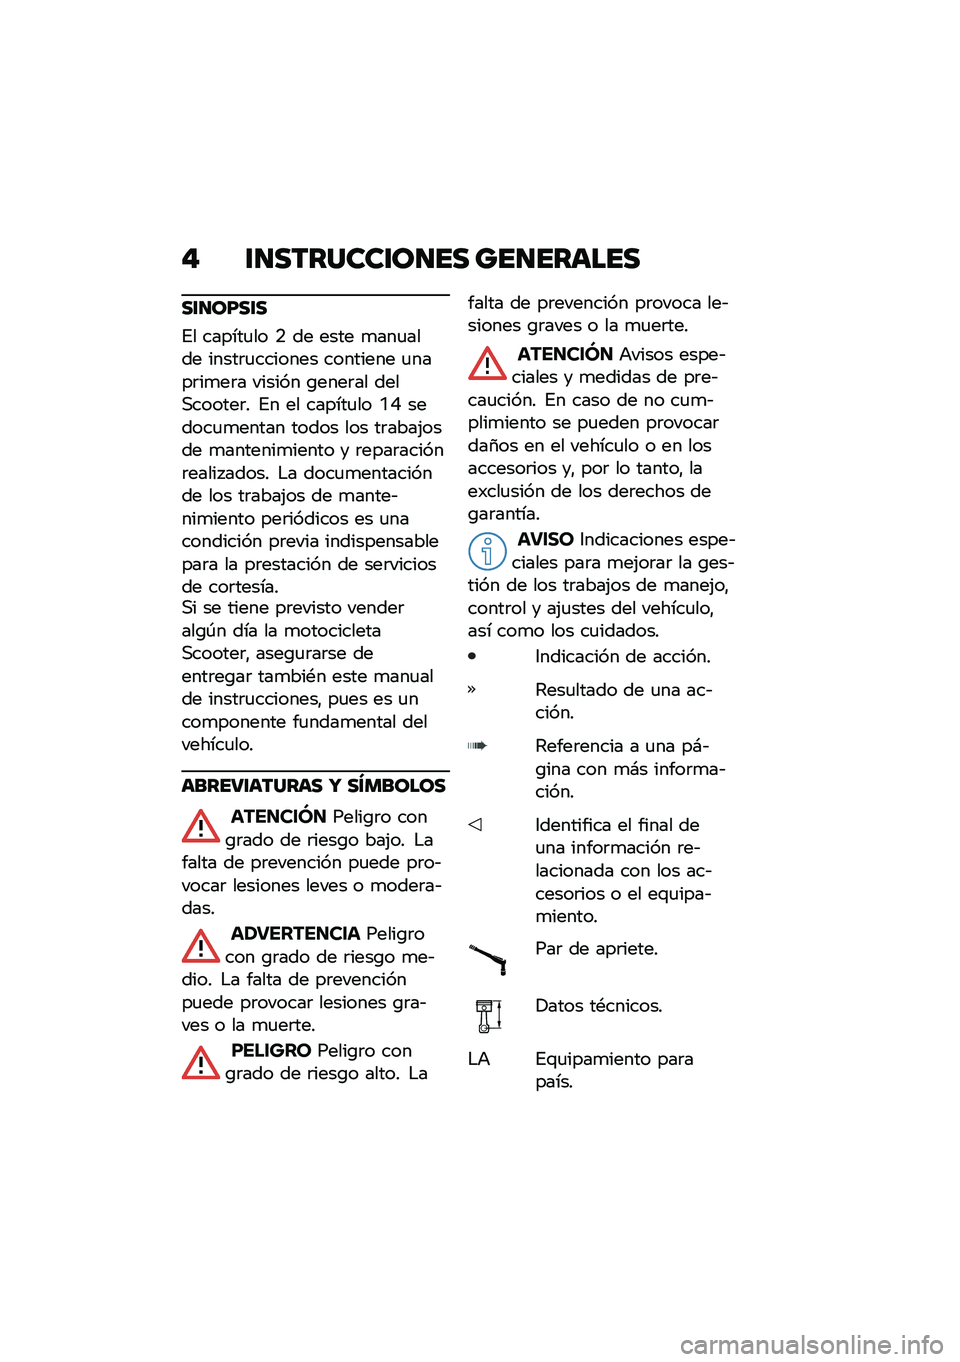 BMW MOTORRAD C 400 GT 2020  Manual de instrucciones (in Spanish) � �\f�
�������\f��
�� ���
������
��\f�
��F��\f�
�%� ������
�� �. �� ���� �
���
���� �����	�
������� �������� �
����	��
��	� �����